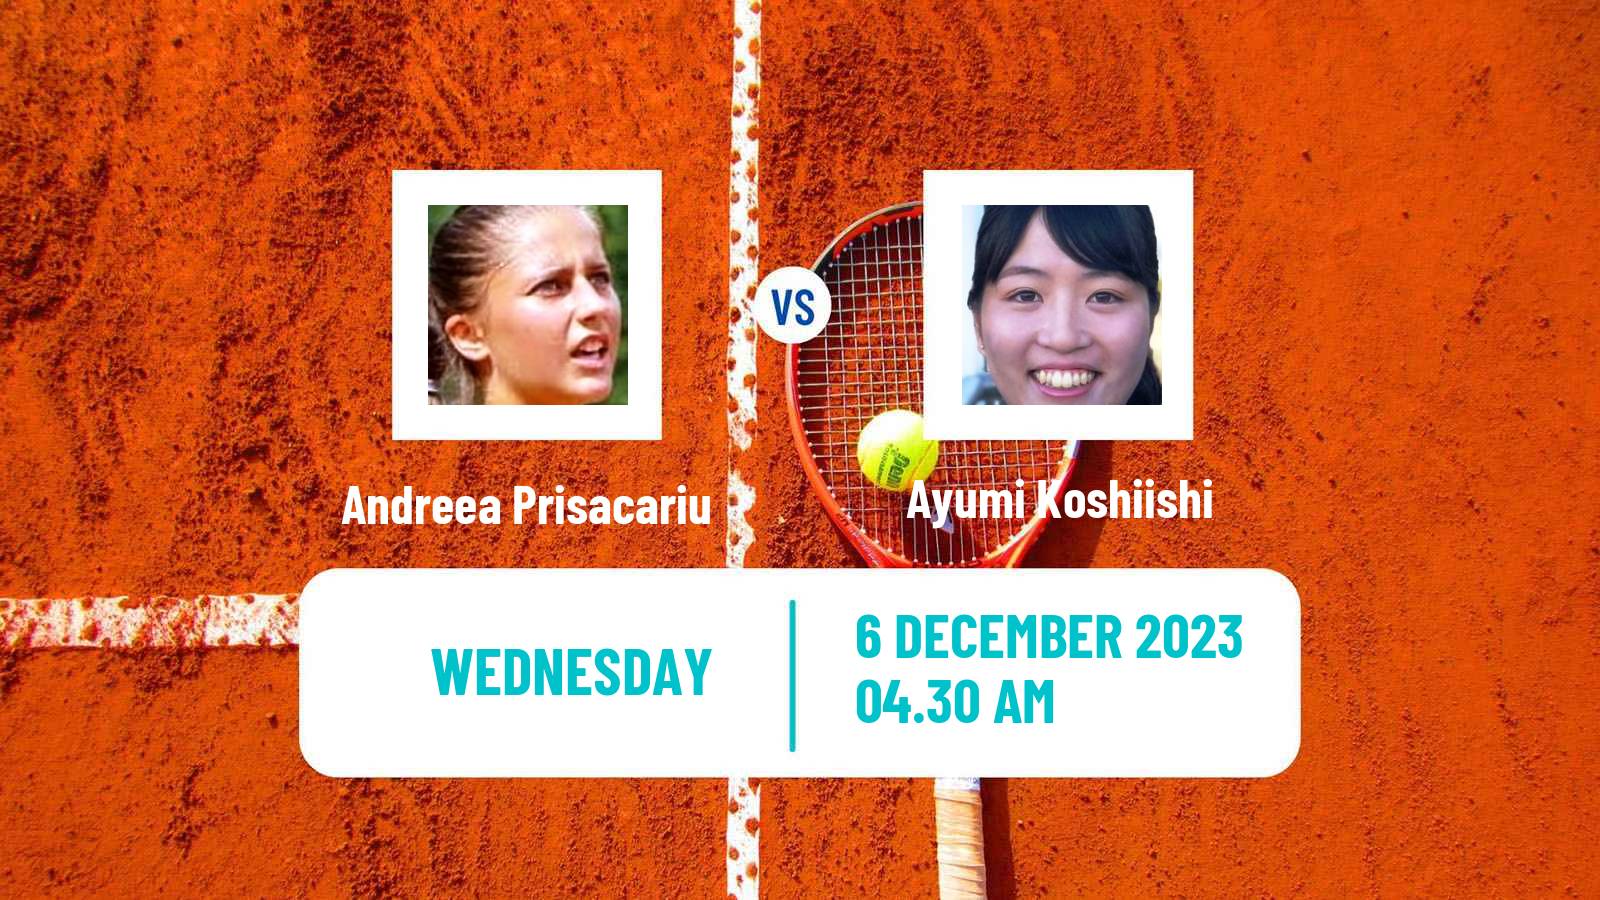 Tennis ITF W25 Monastir 5 Women Andreea Prisacariu - Ayumi Koshiishi